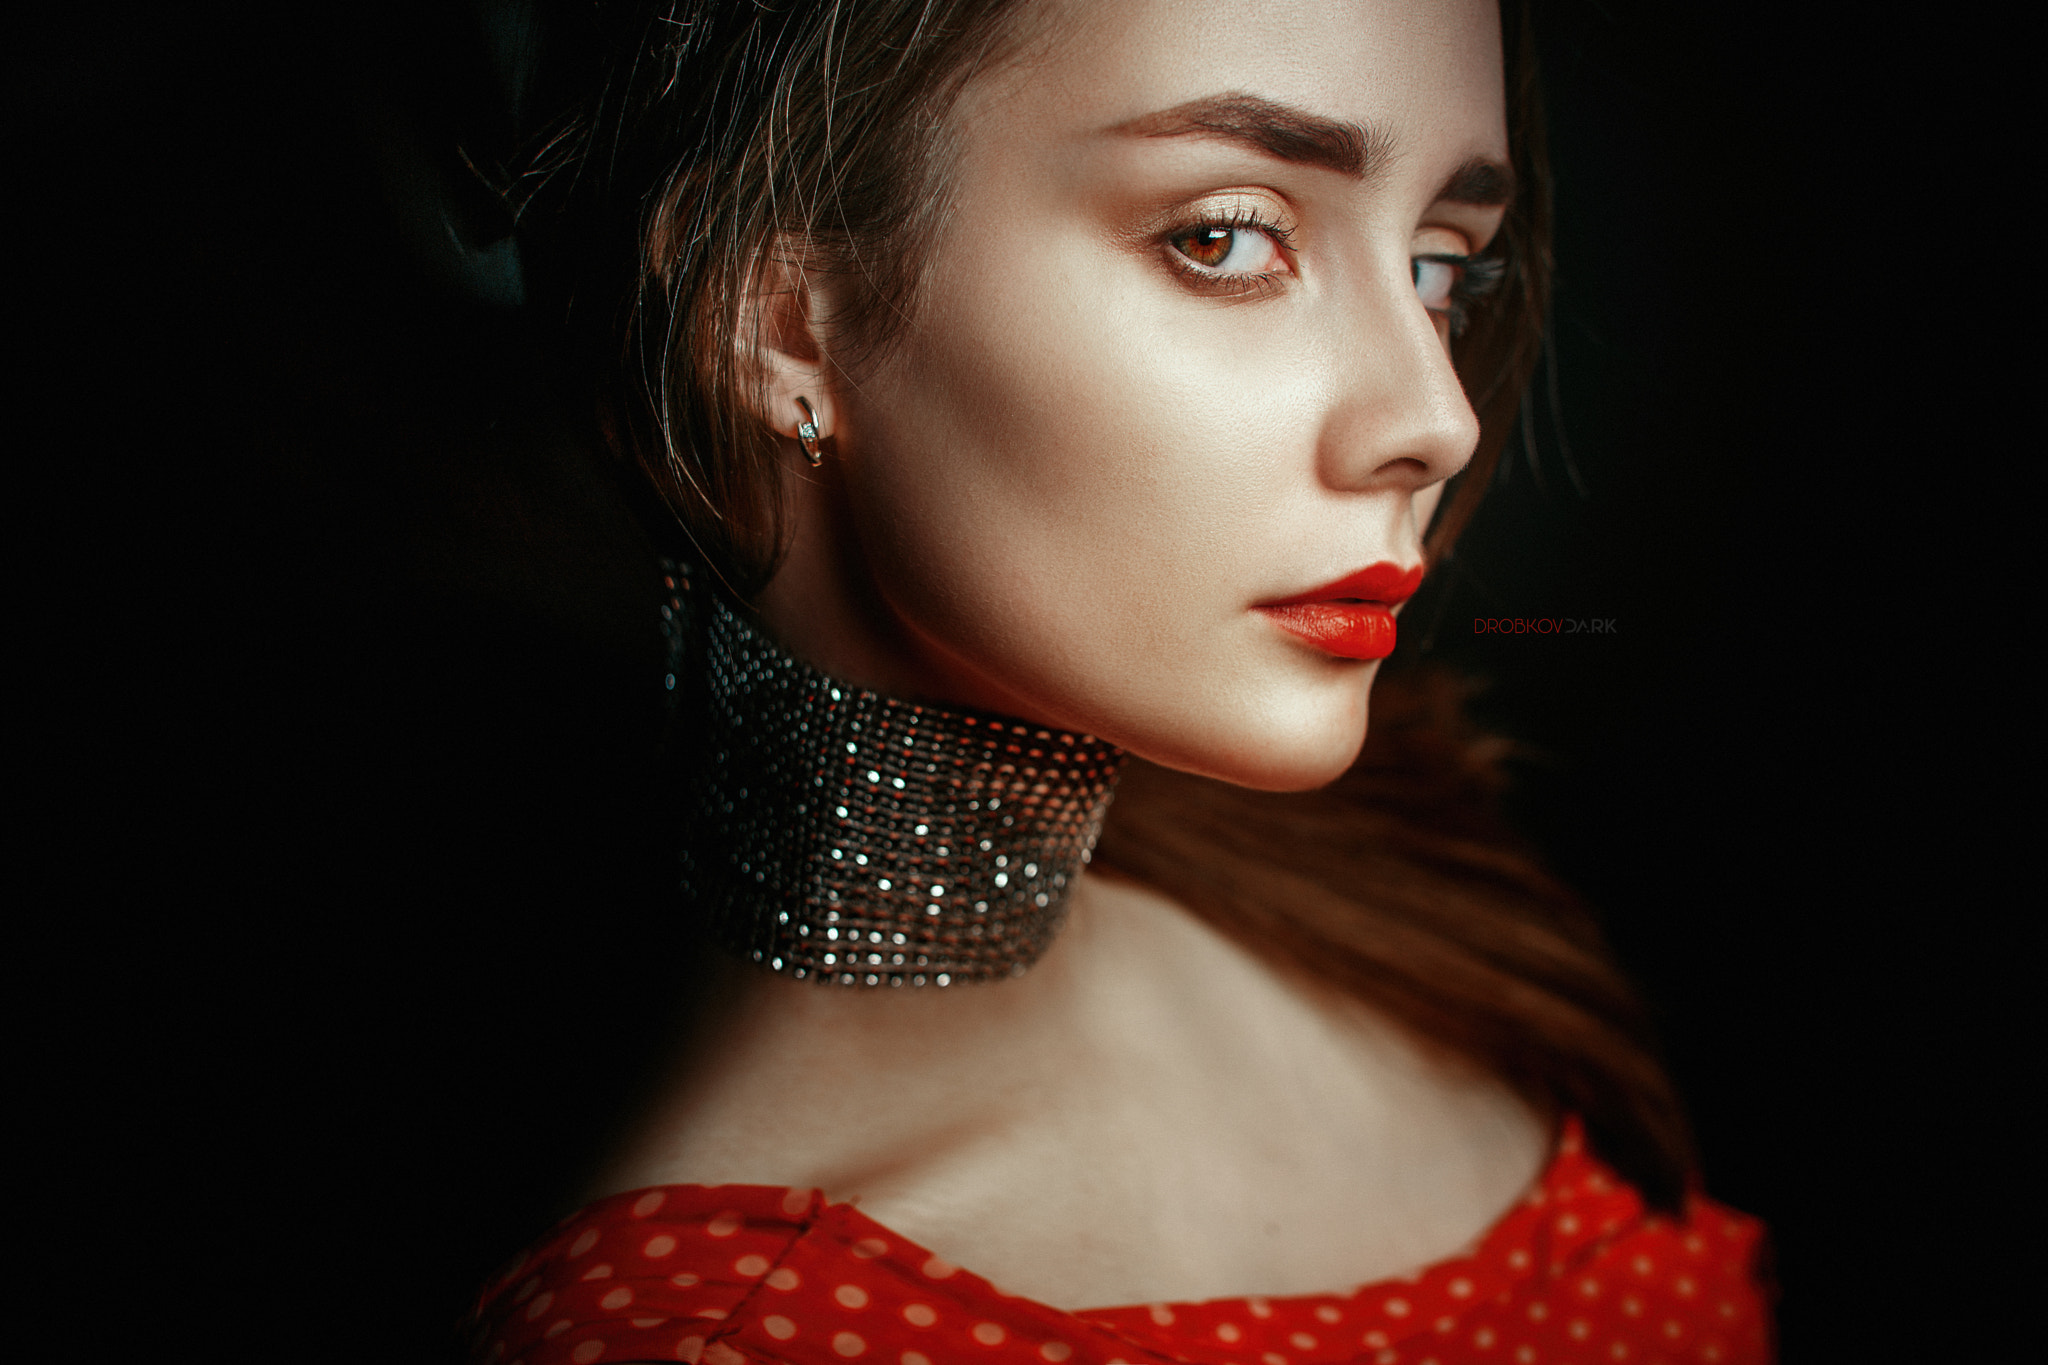 Alexander Drobkov Women Brunette Choker Looking At Viewer Red Lipstick Red Dark Portrait 2048x1365